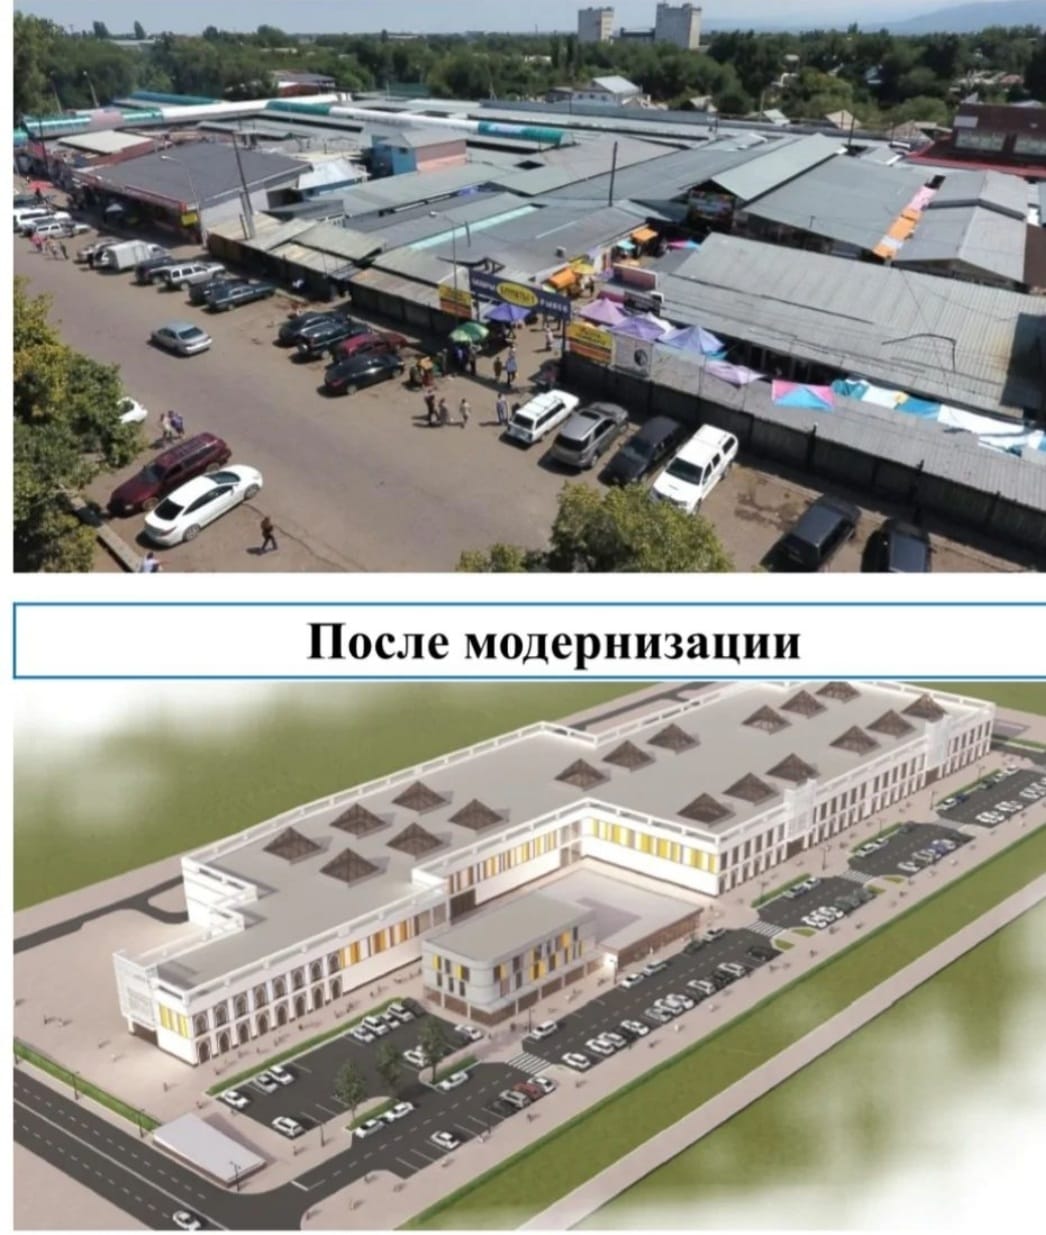 Запланирована модернизация рынка Алматы - 1